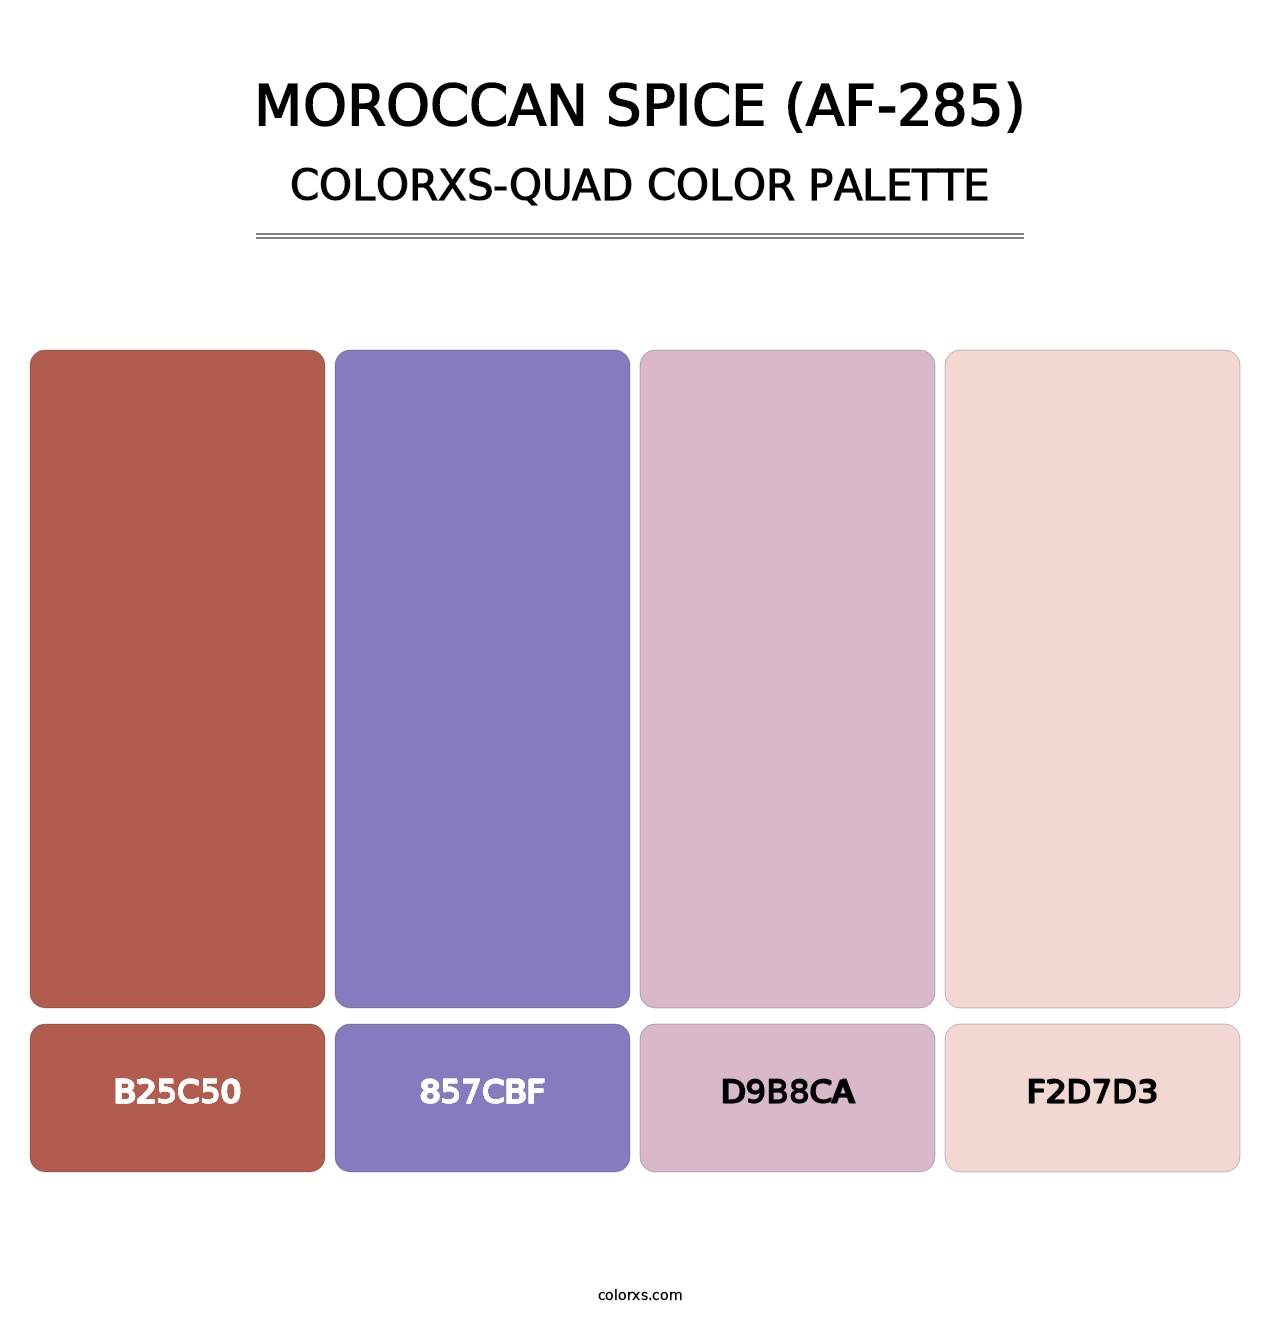 Moroccan Spice (AF-285) - Colorxs Quad Palette